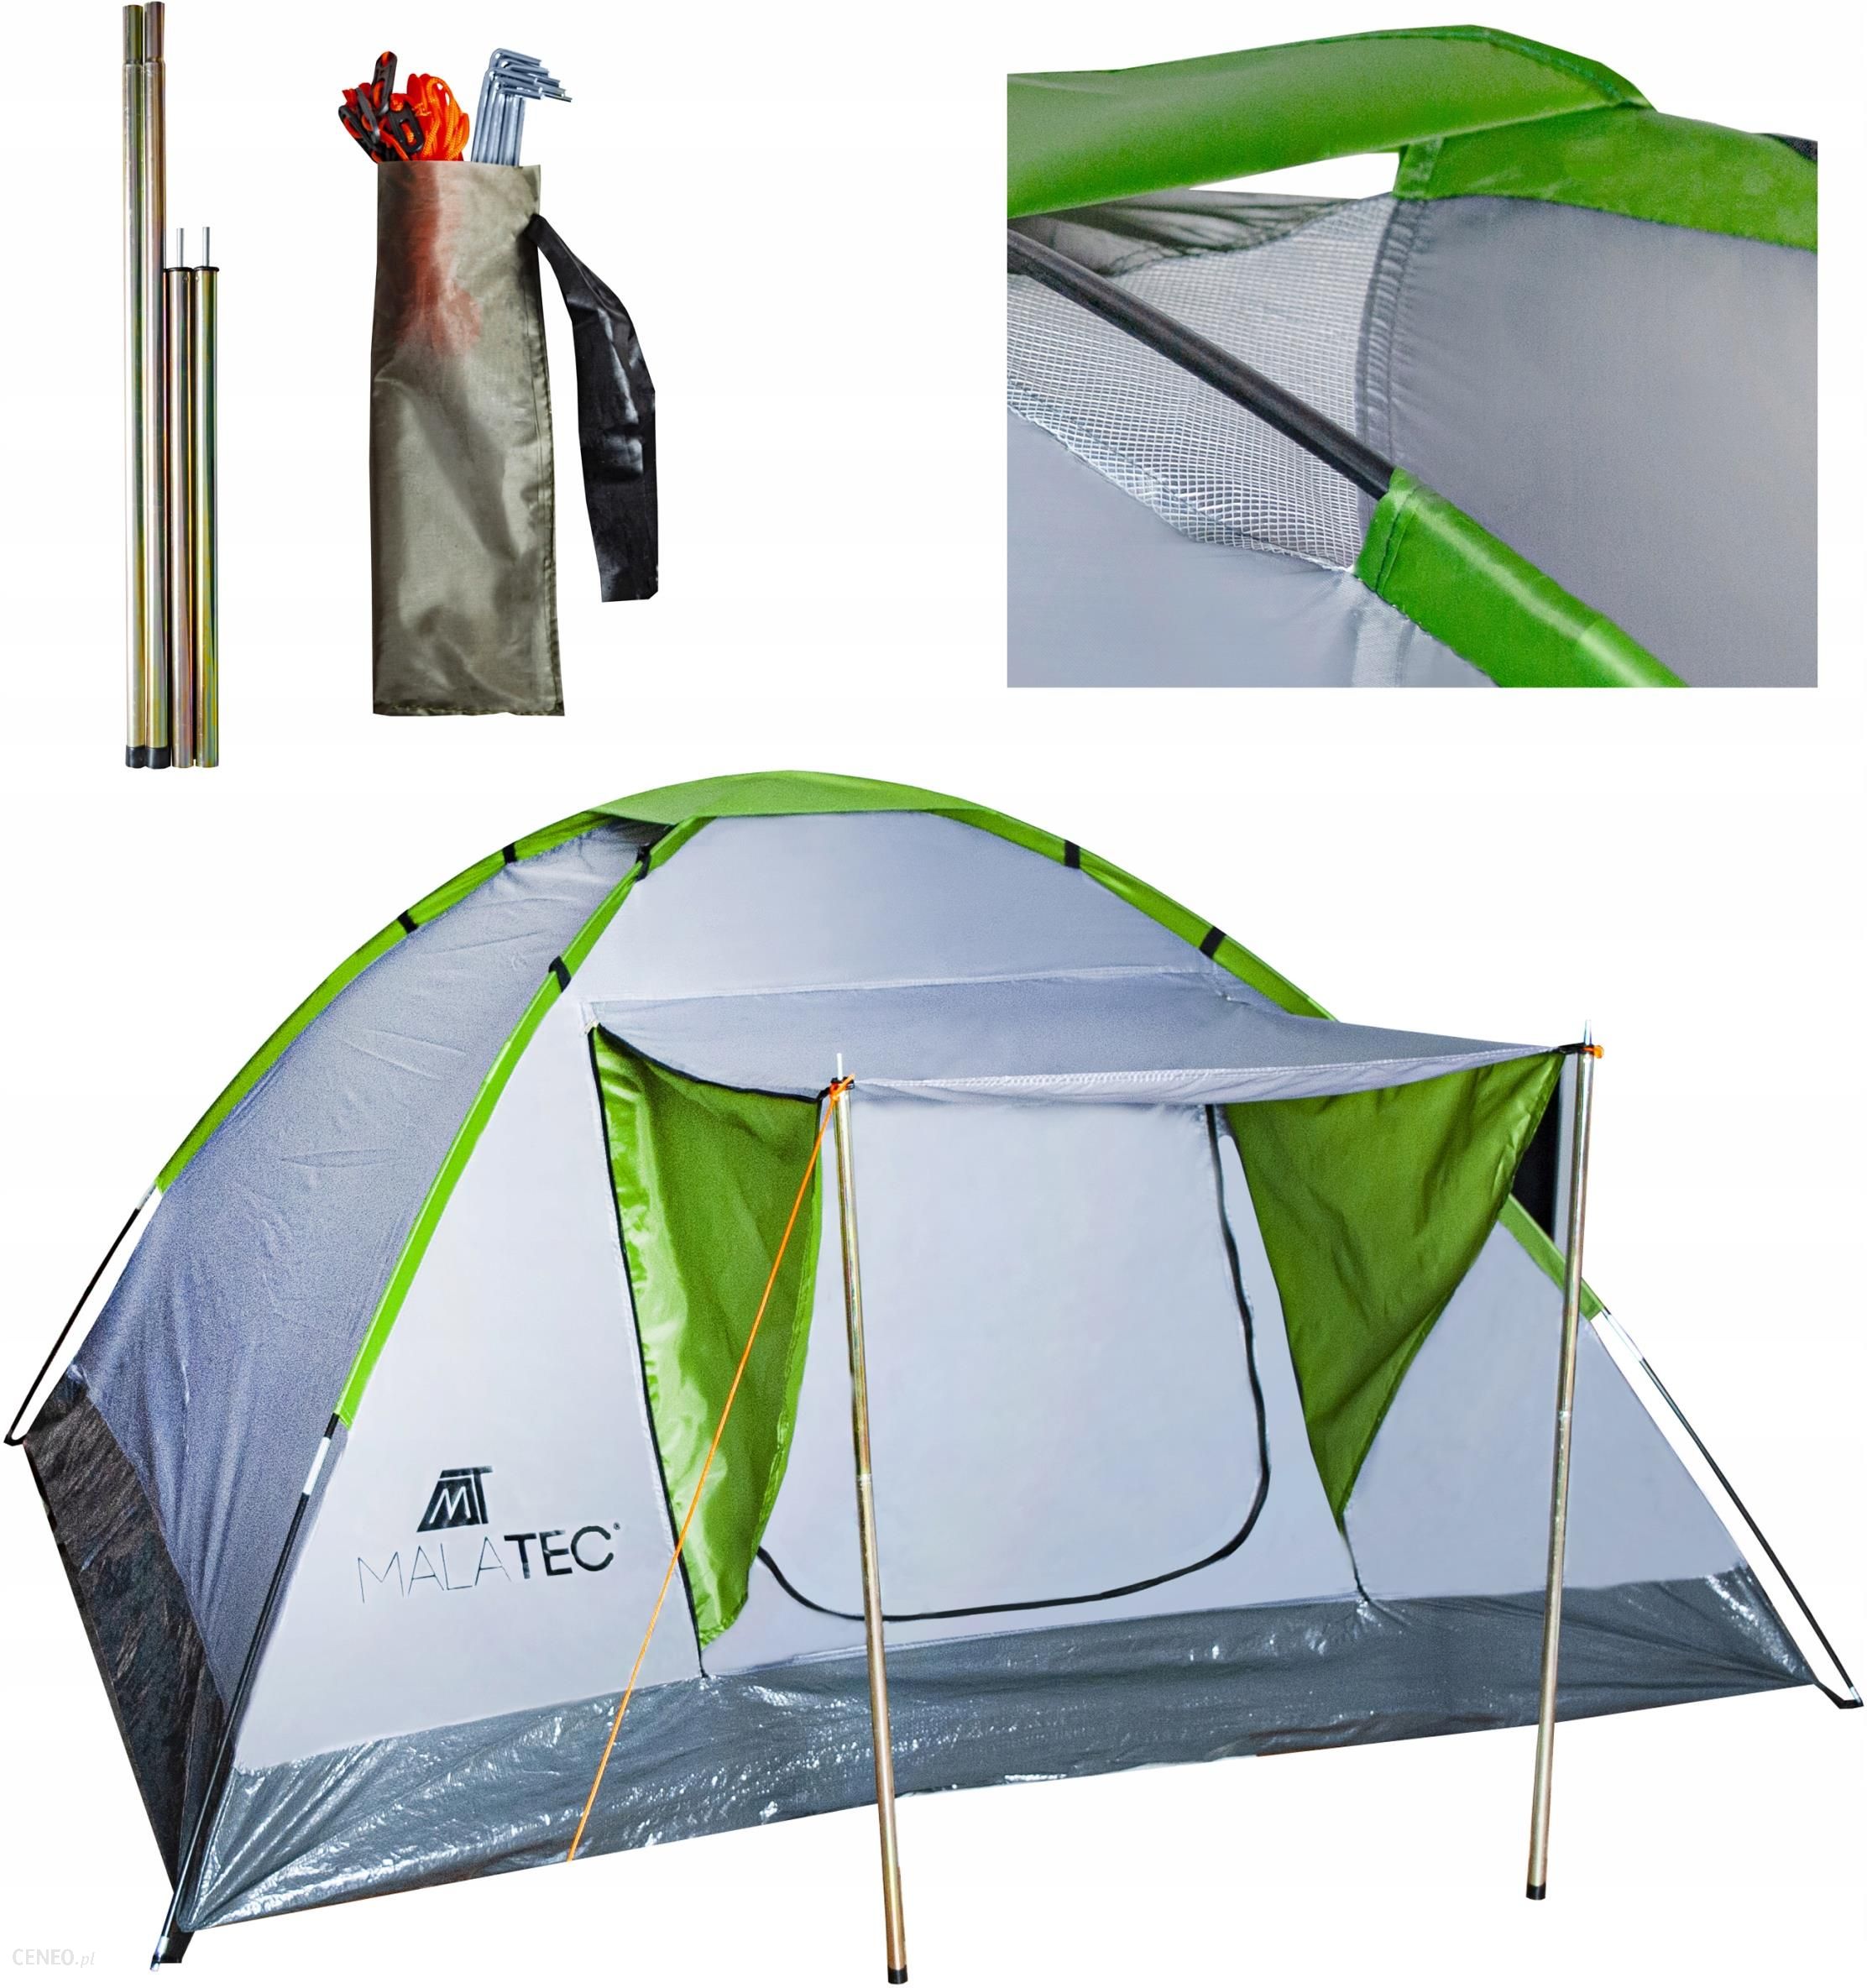 Рейтинг палаток туристических на 3 4. Палатка 4 местная Монтана тент. Палатка Royokamp Splash Tourist Tent. Палатка 4-местная Camping Keeper автоматическая. Палатки терка тенс 4 местная с козырьком.